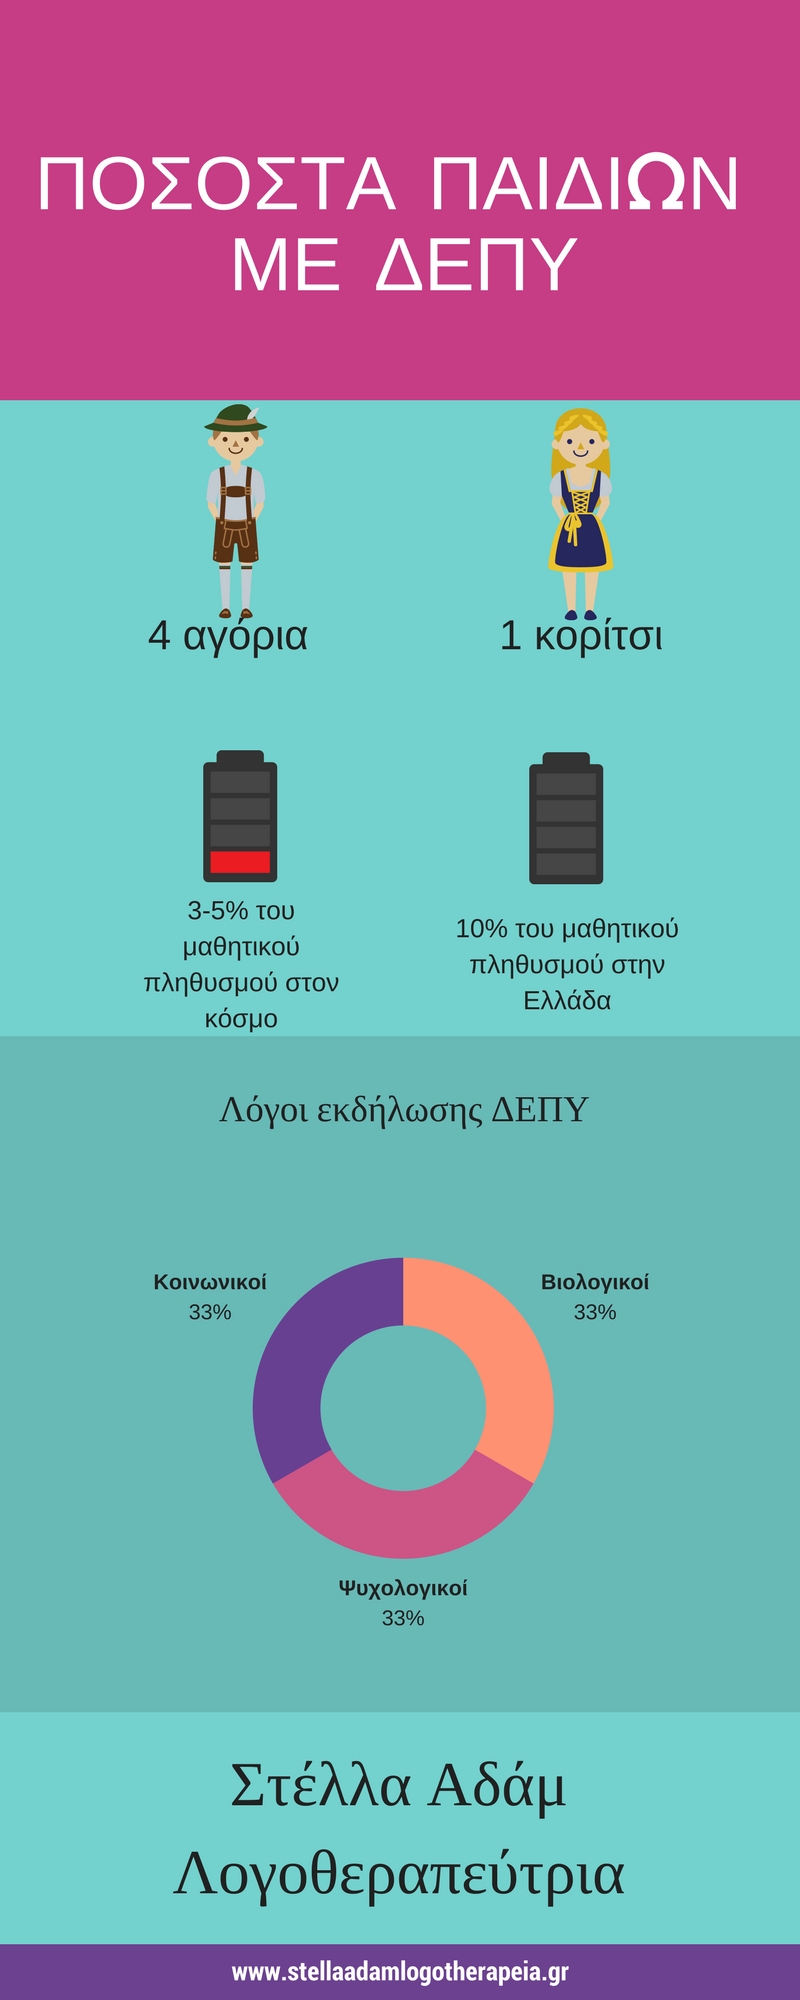 infographic ΔΕΠΥ